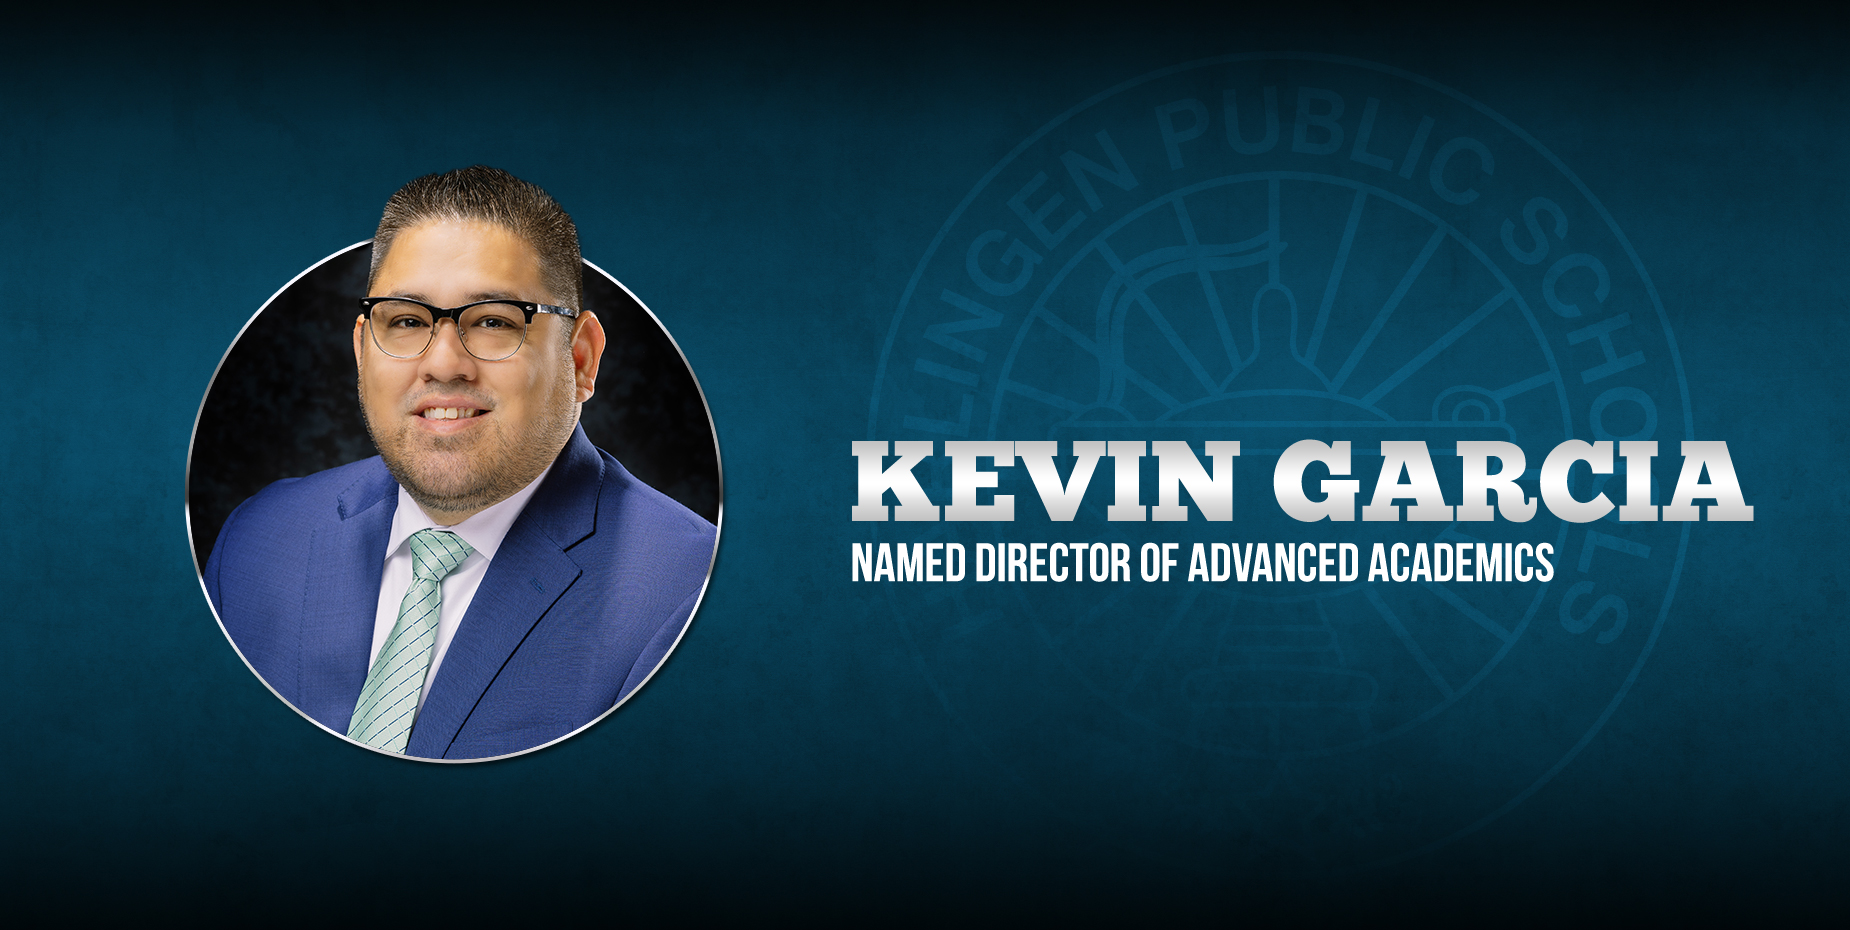 Kevin Garcia fue nombrado Director de Programas Académicos Avanzados.